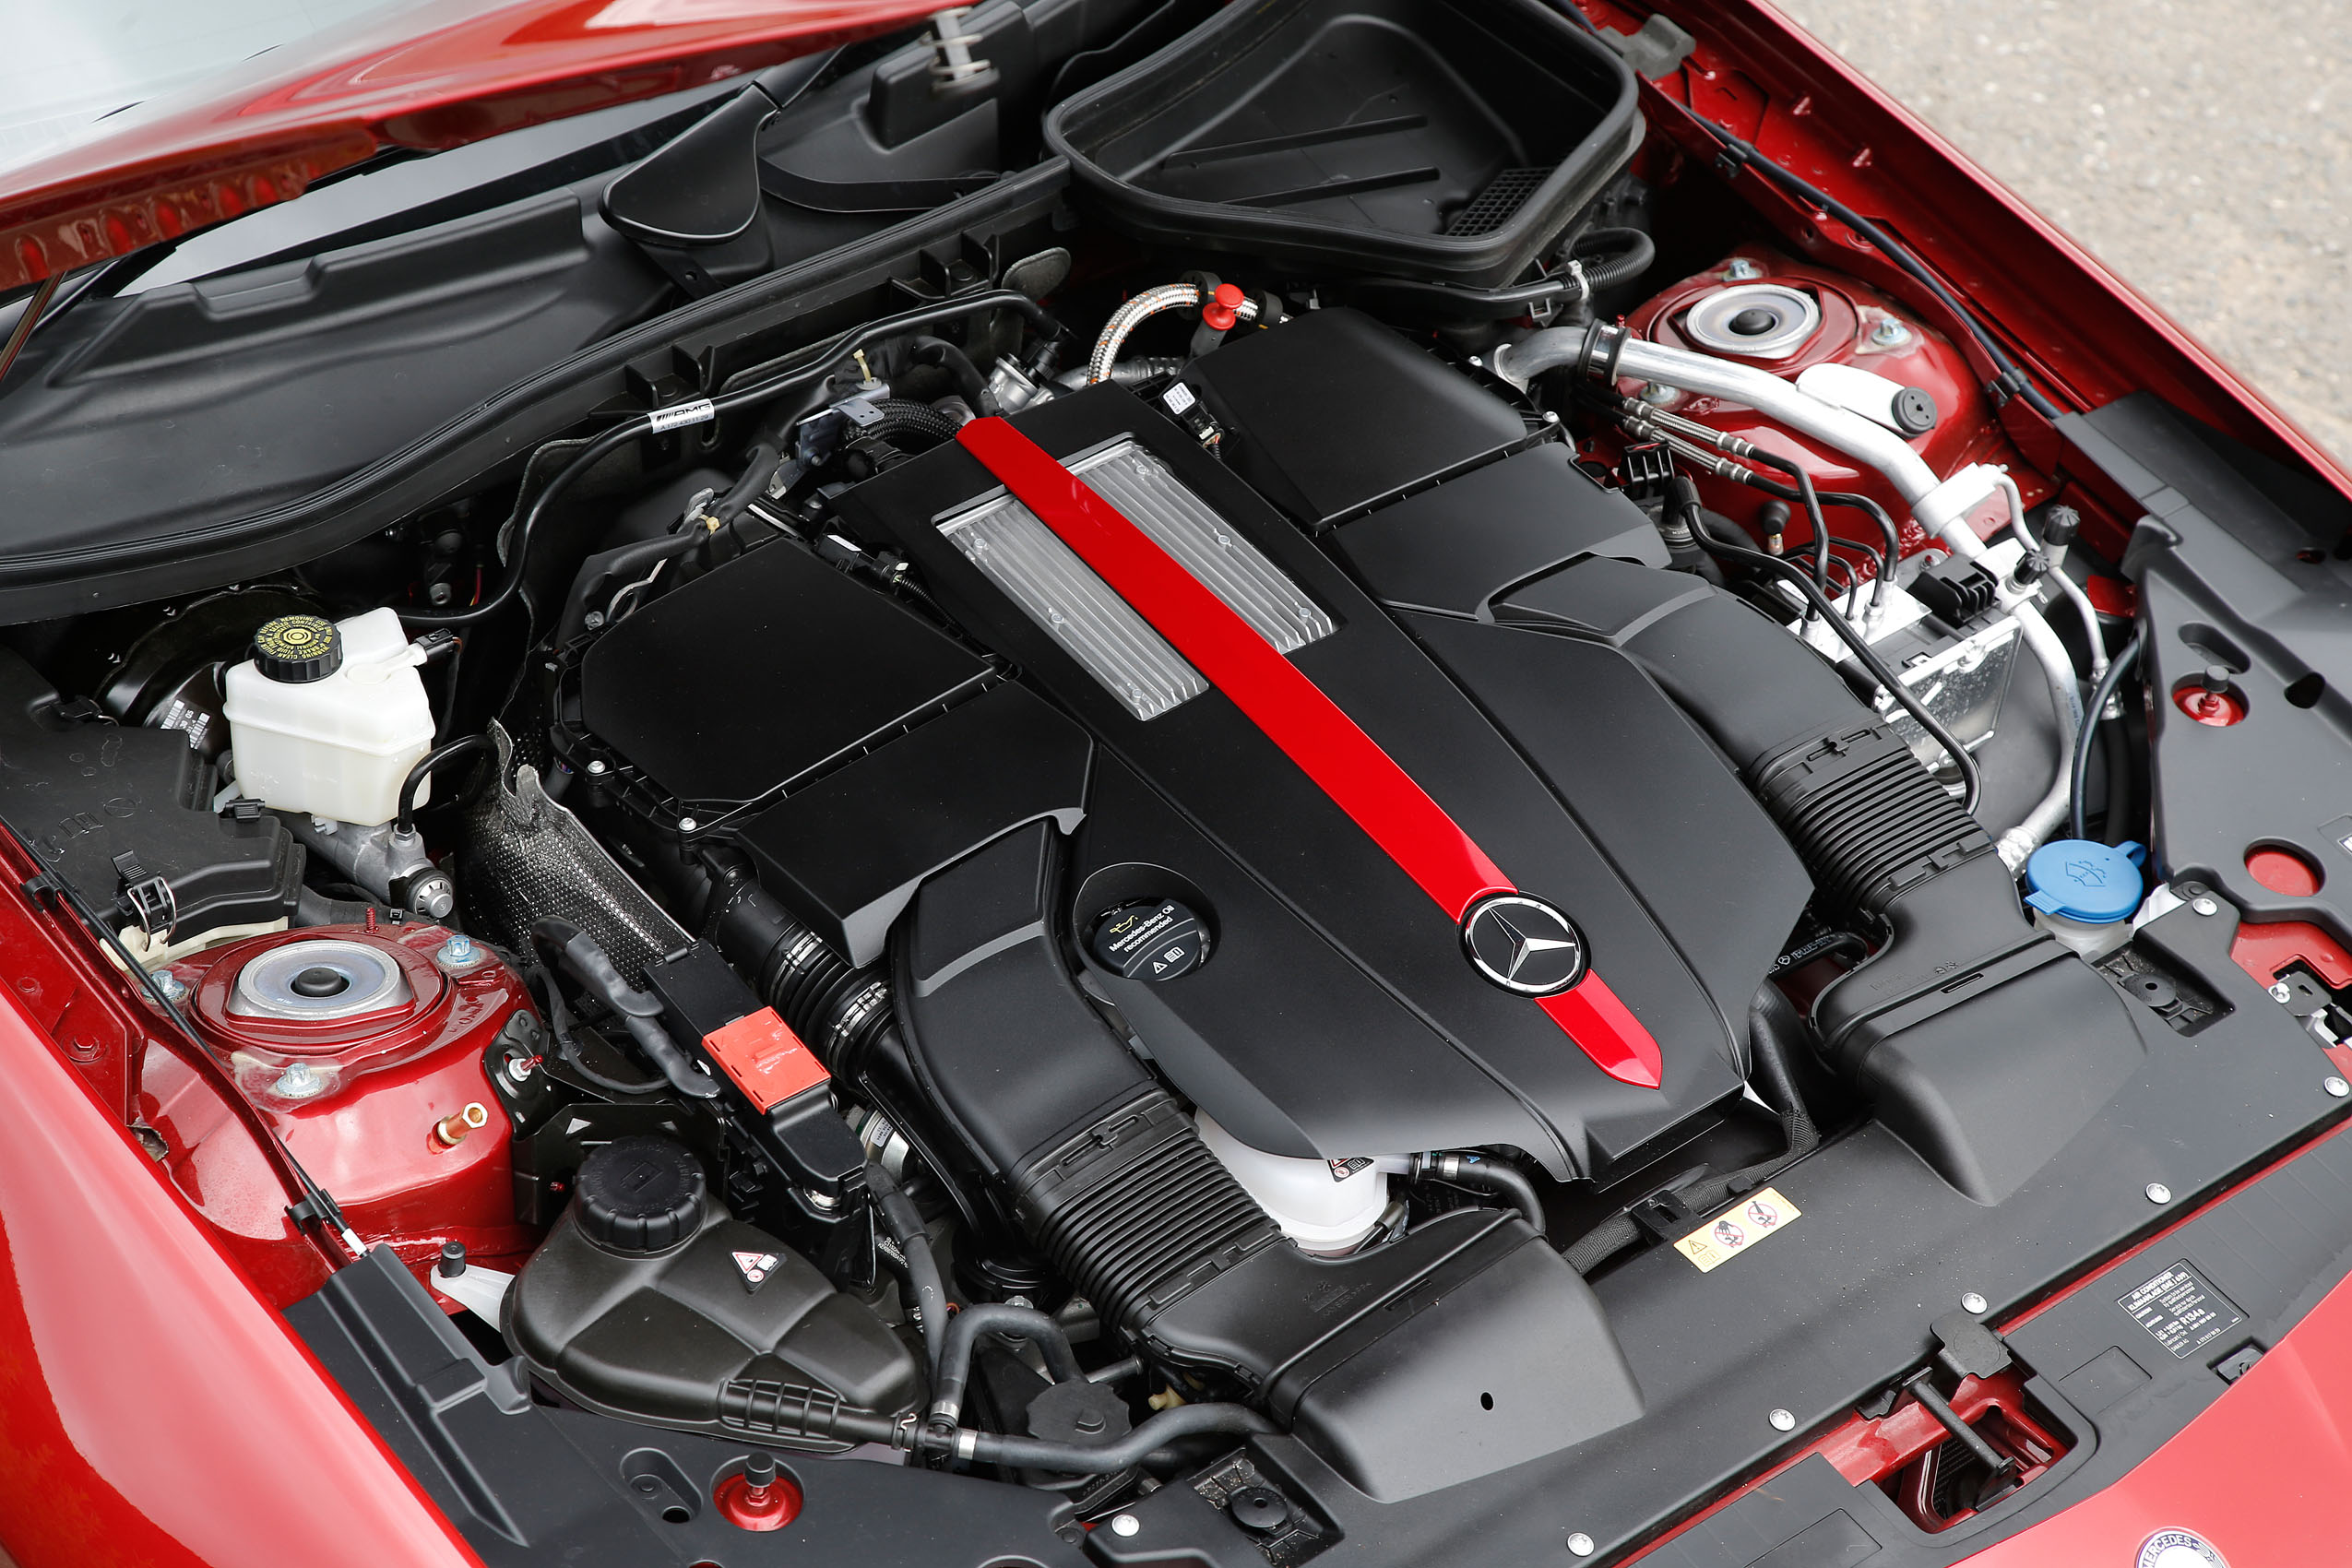 3.0-litre V6 Mercedes-AMG SLC 43 engine